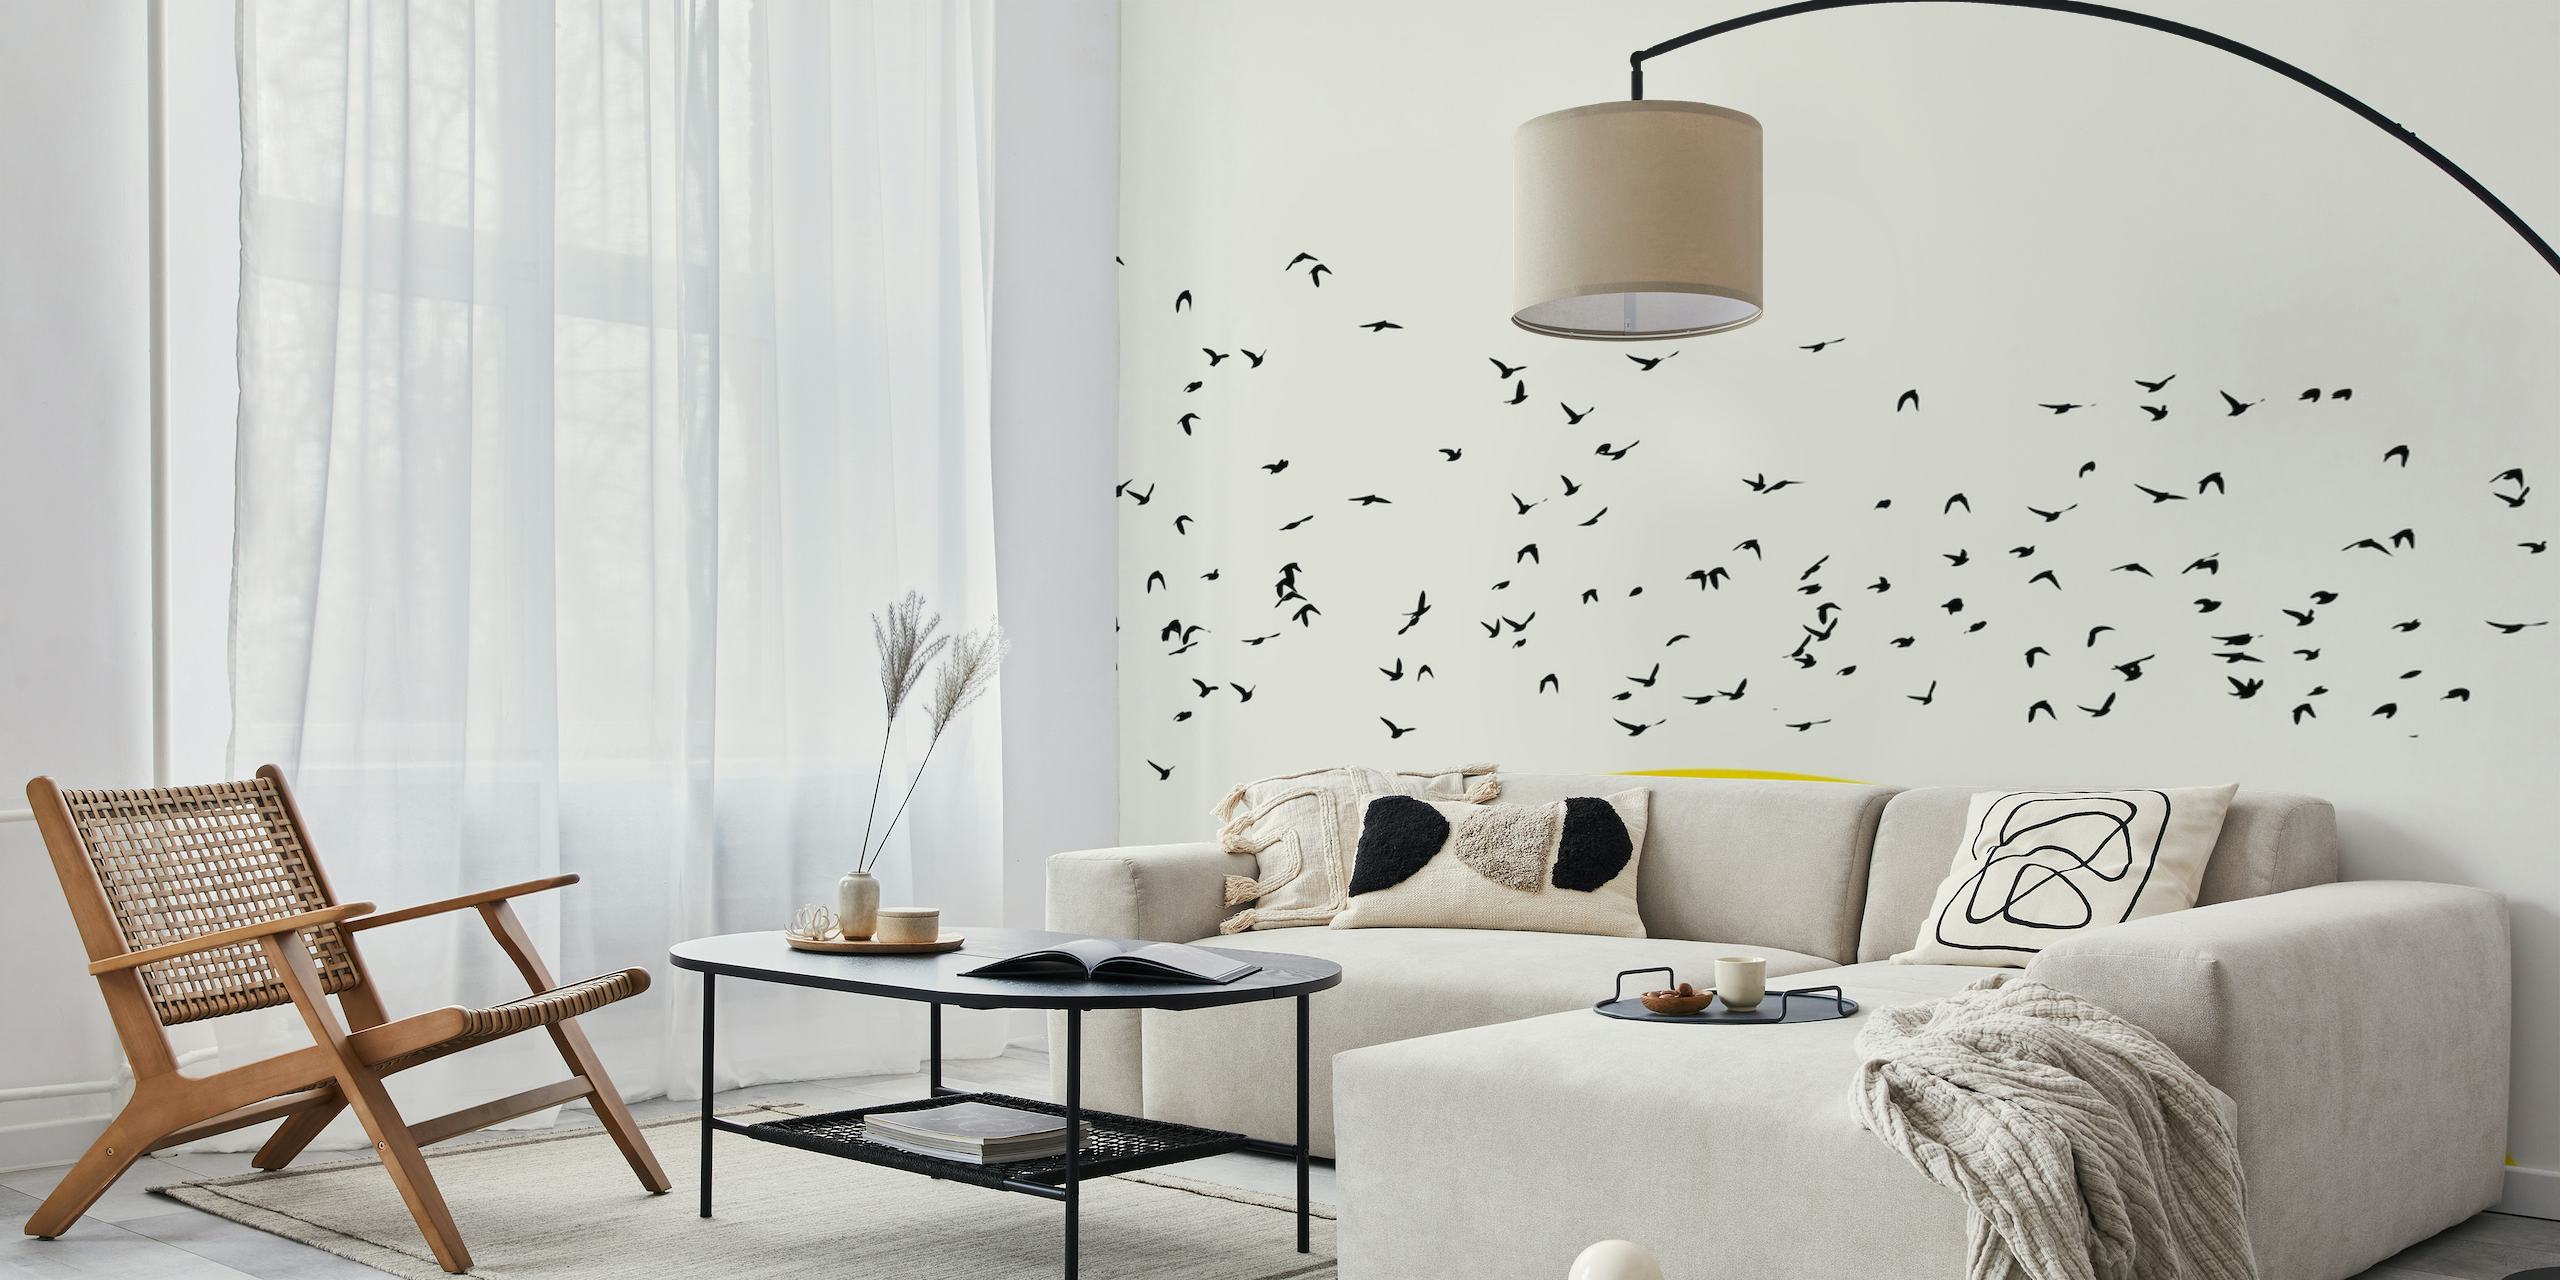 A Thousand Birds wallpaper